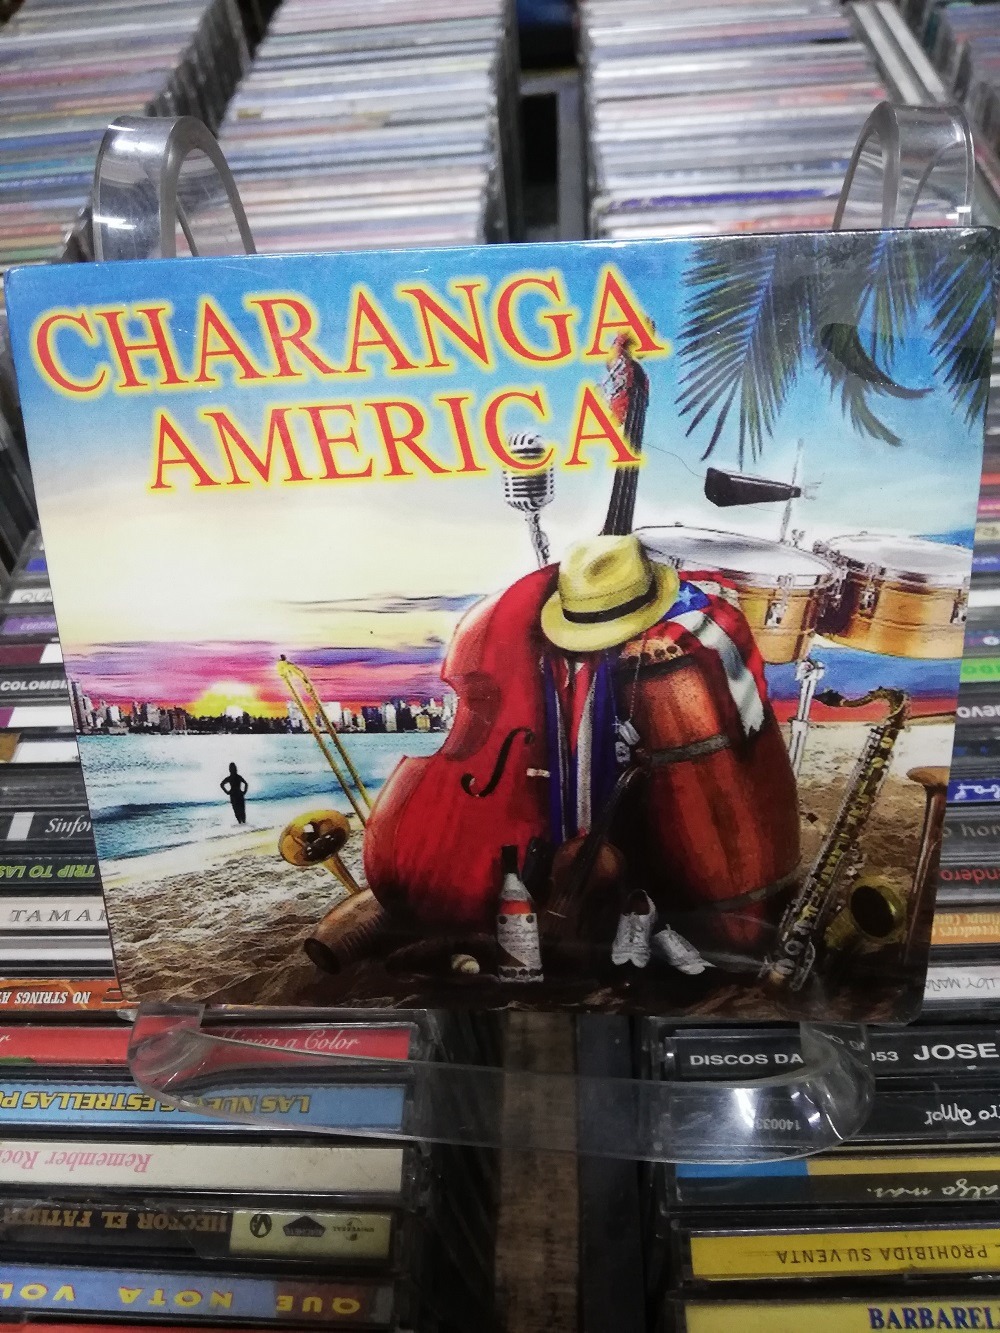 Imagen CD CHARANGA AMÉRICA - EXITOS